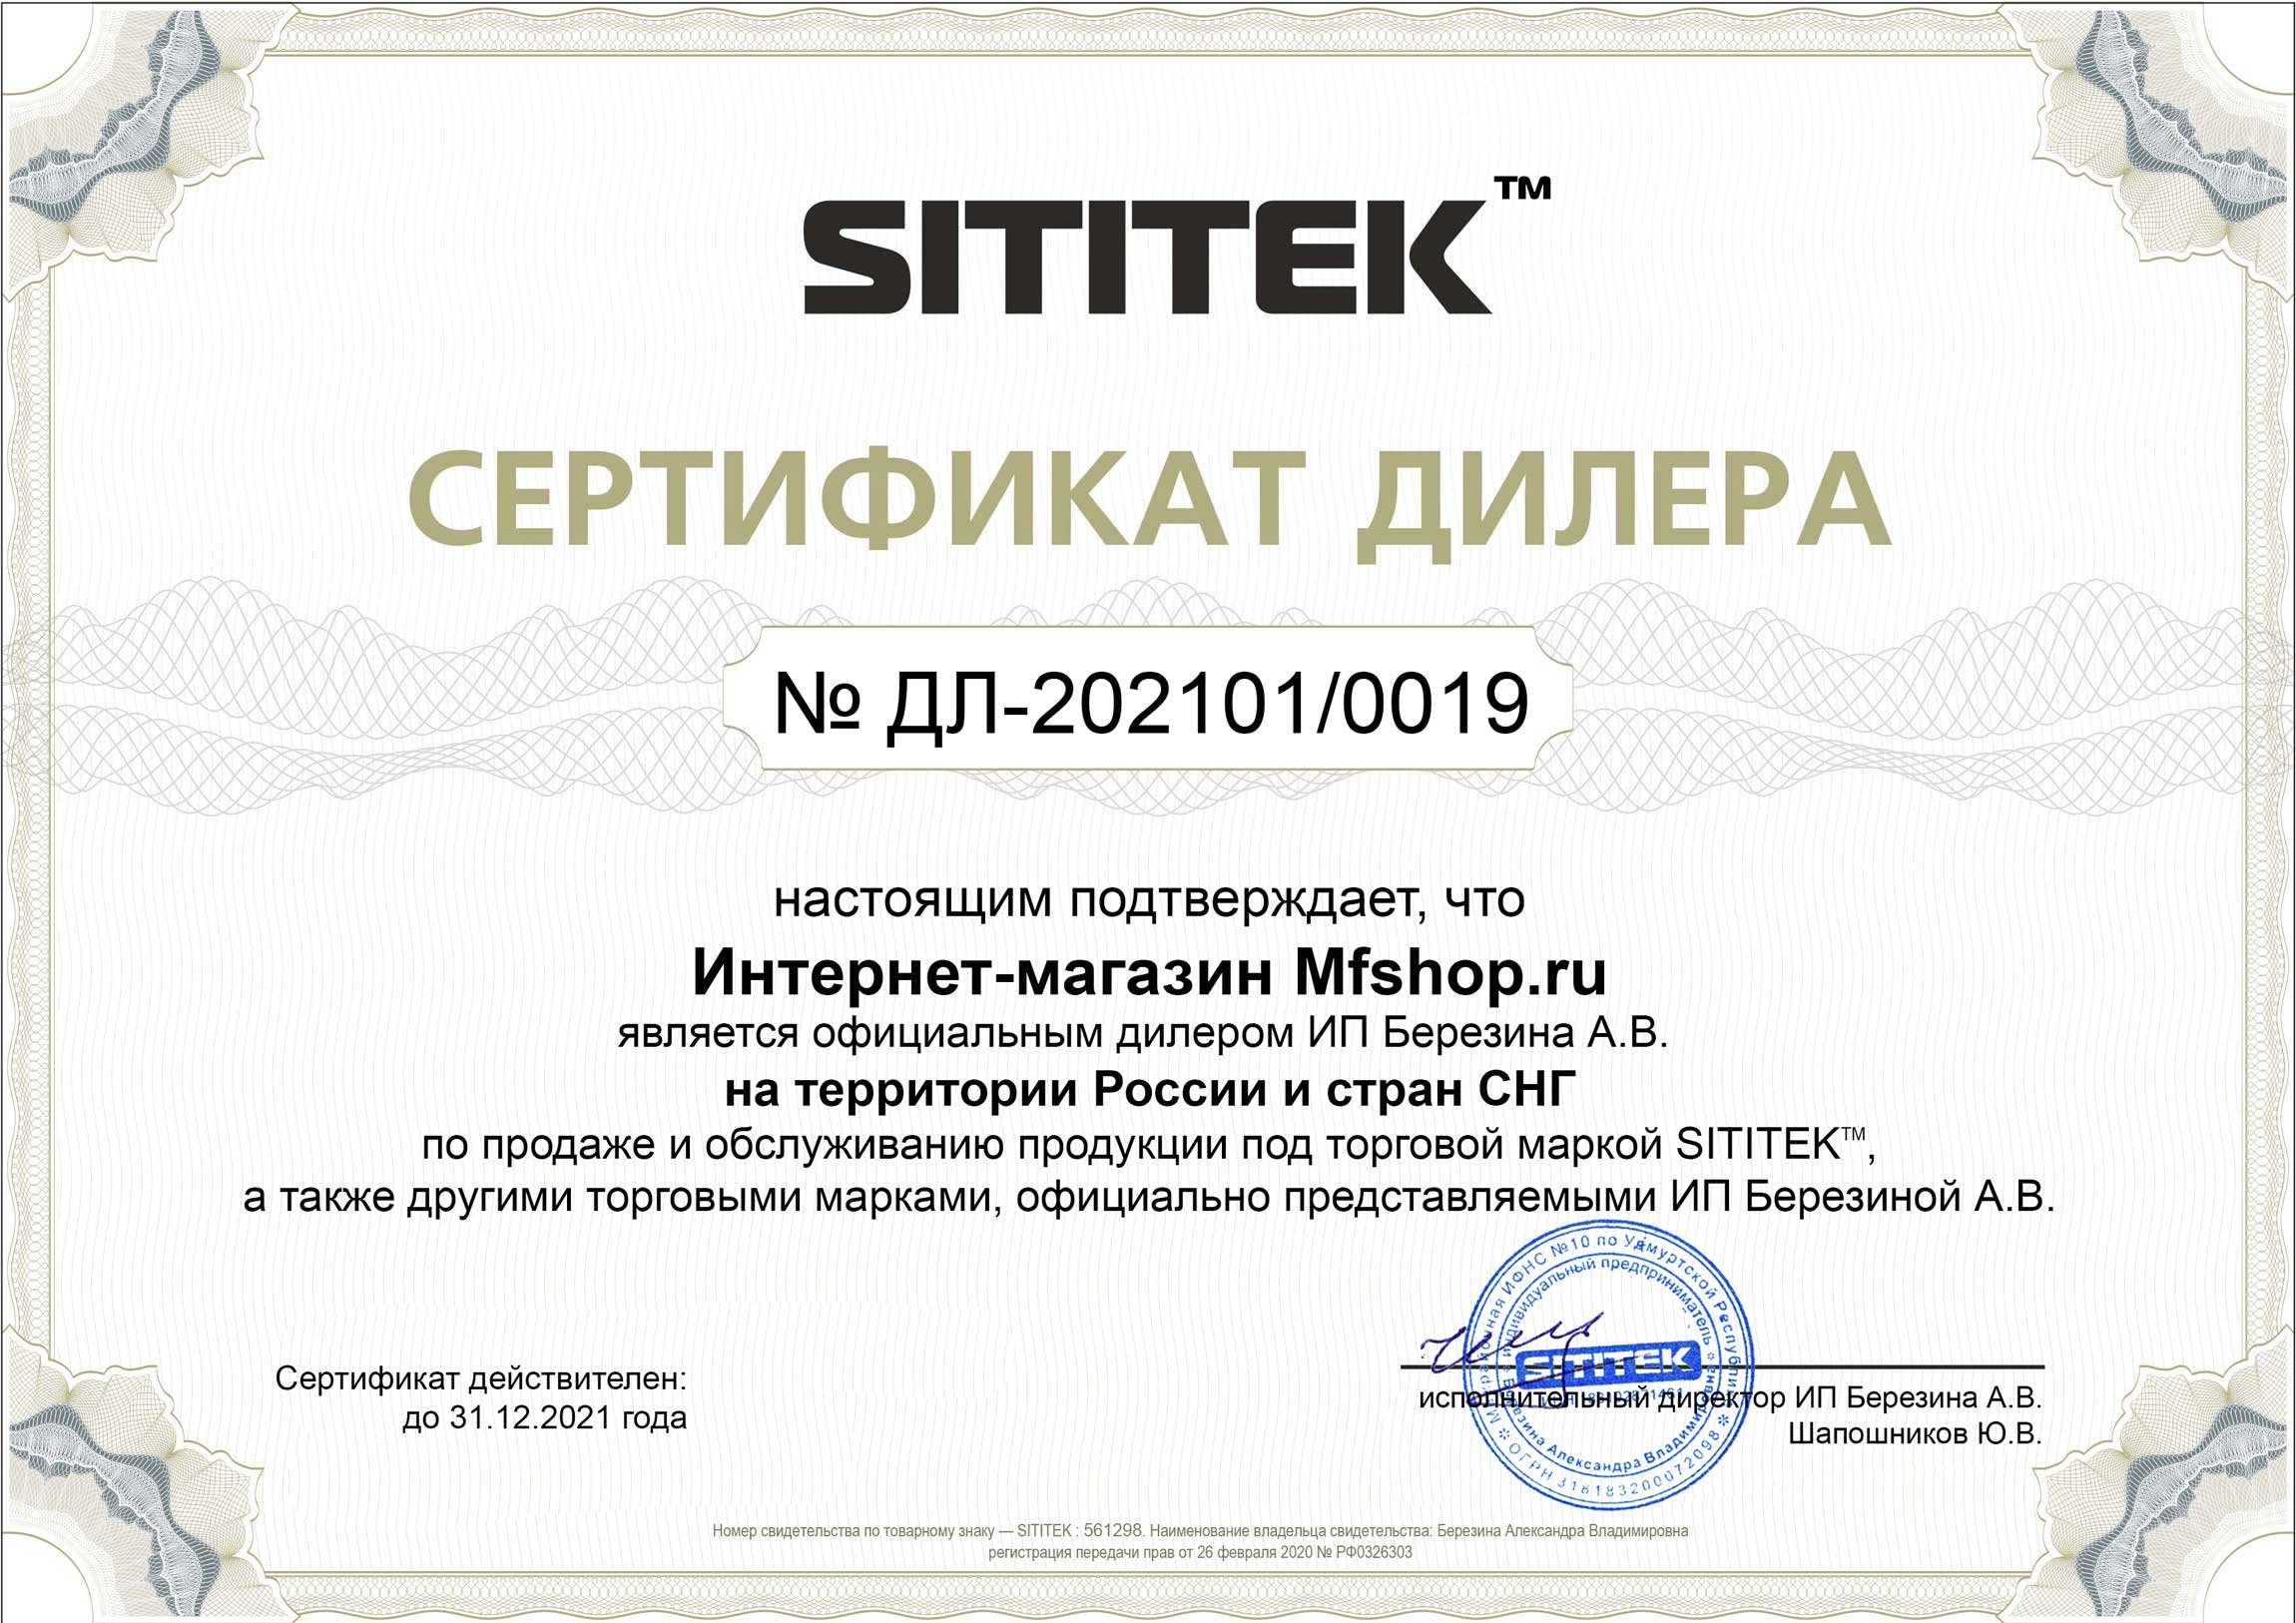 Наш магазин является официальным дилером продукции марки sititek и имеет соответствующий сертификат (нажмите для увеличения)